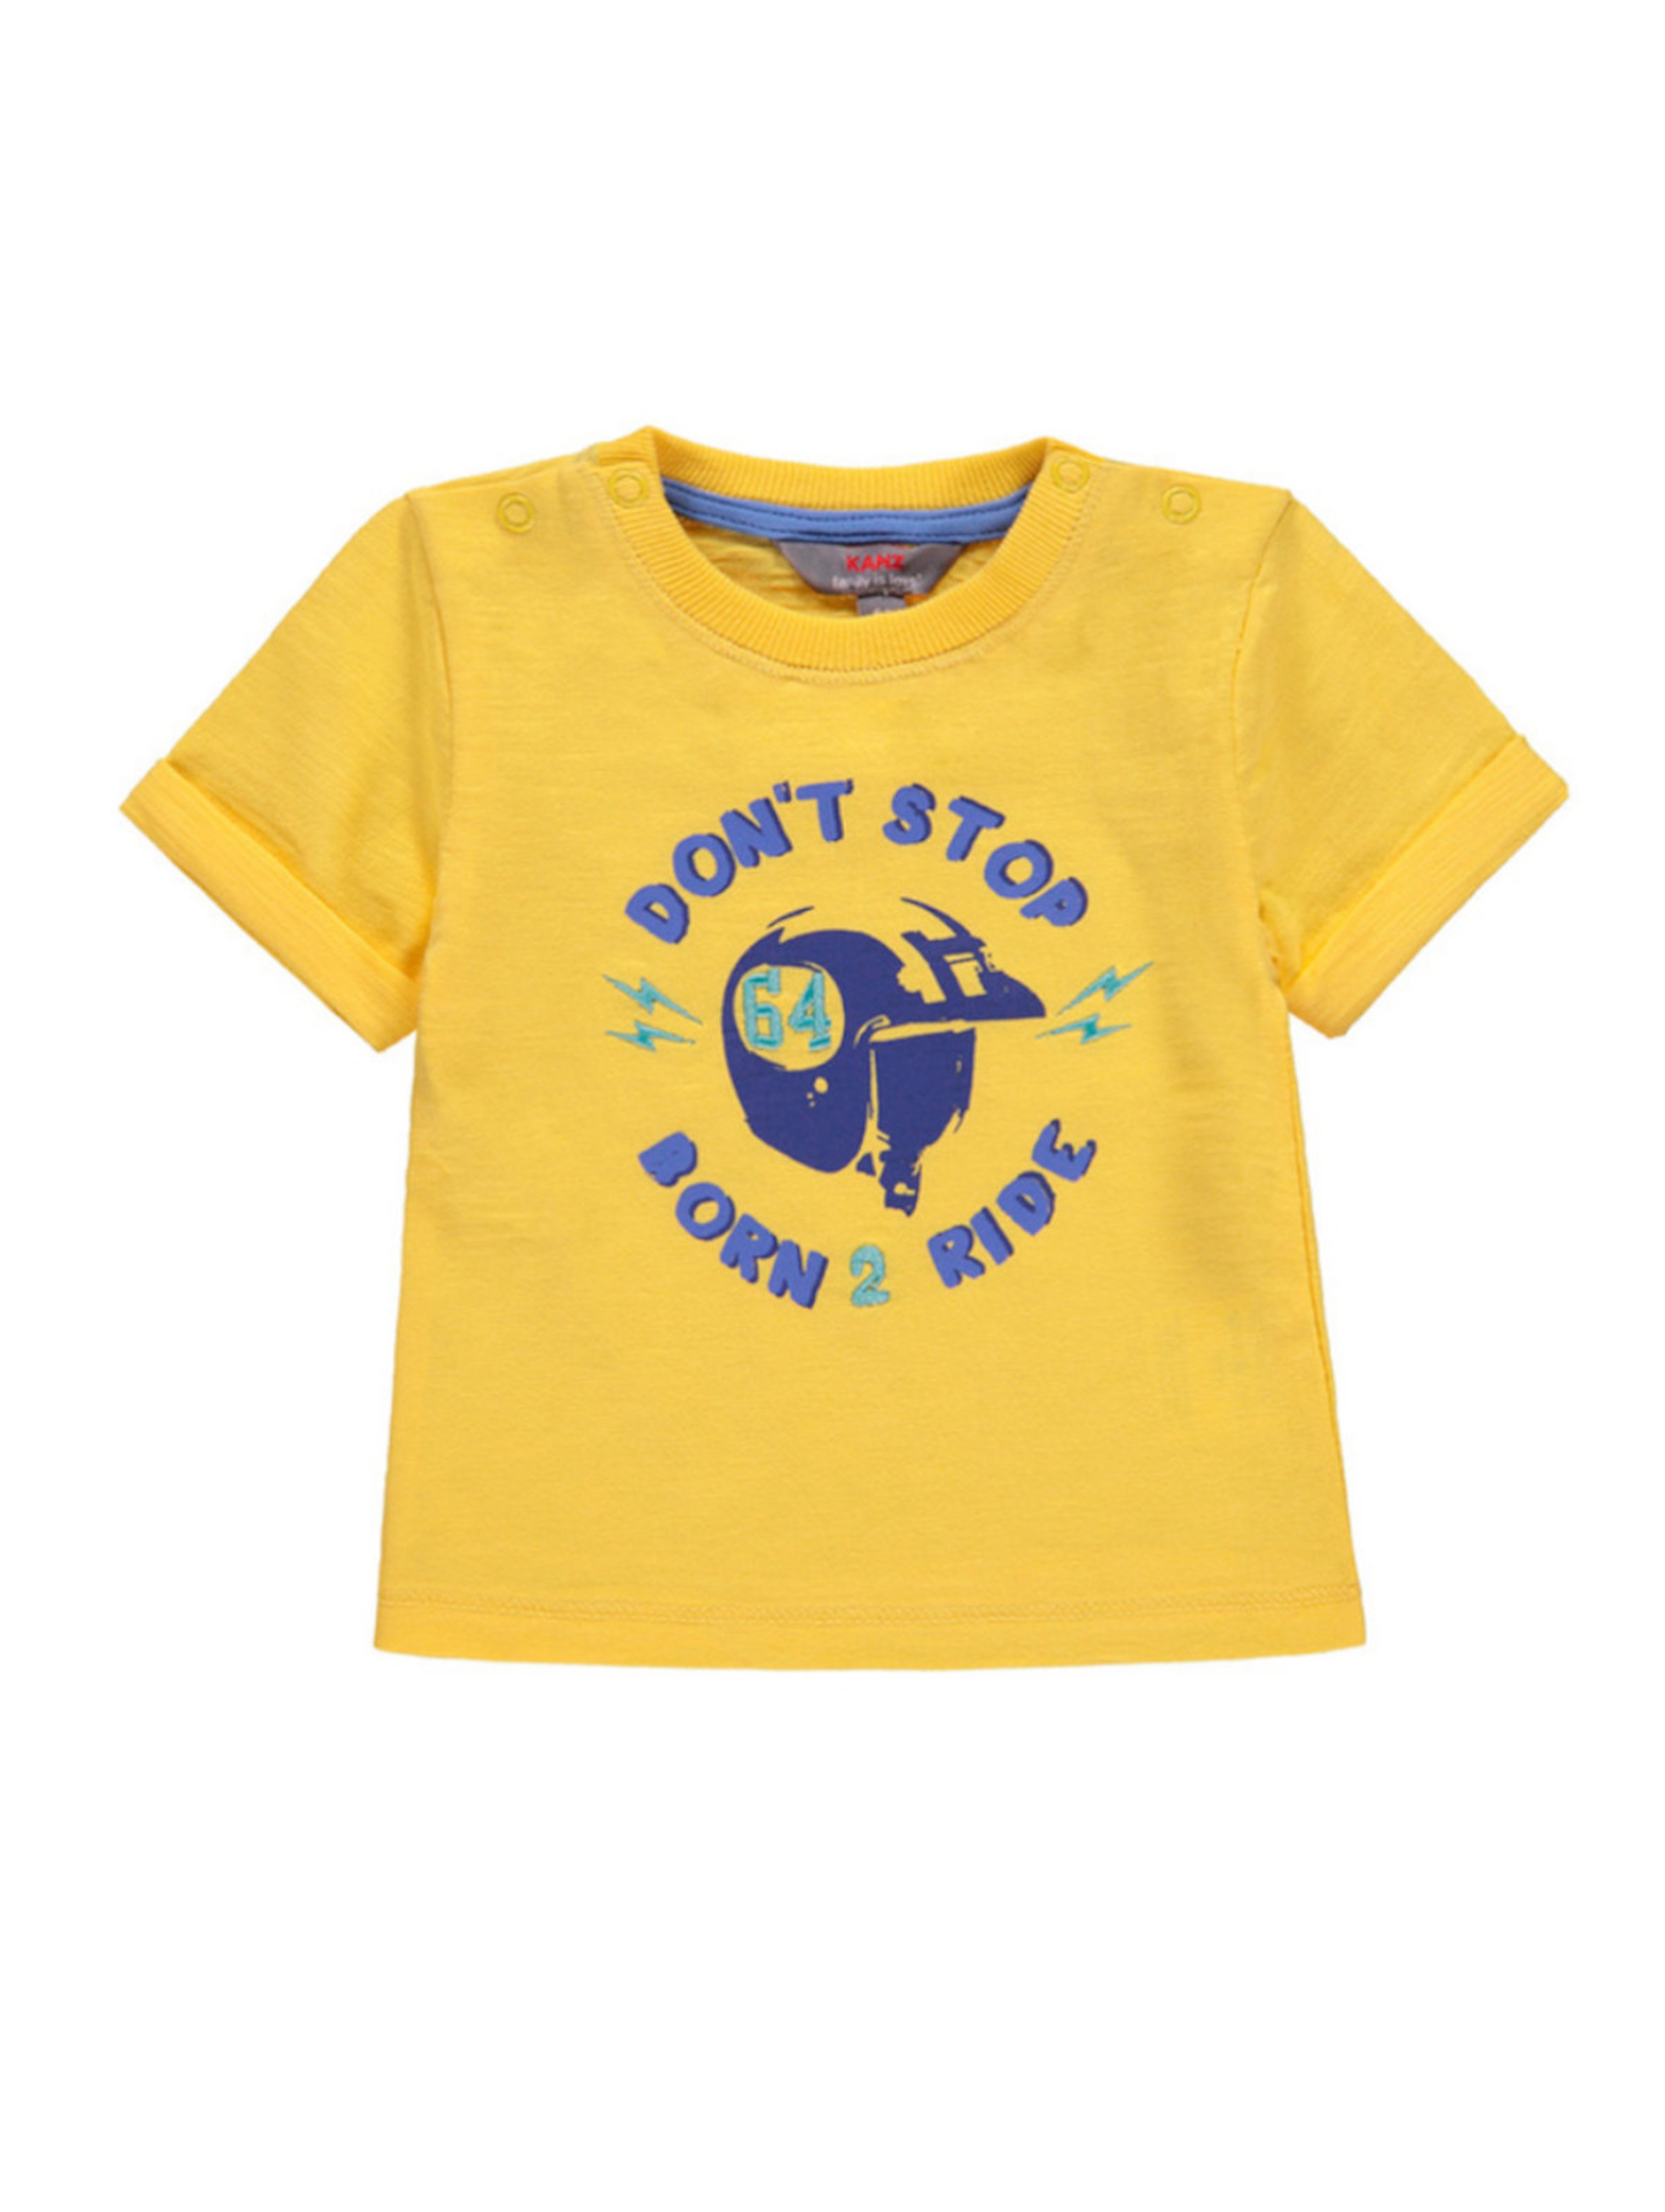 Chłopięca niemowlęca bluzka z krótkim rękawem żółta